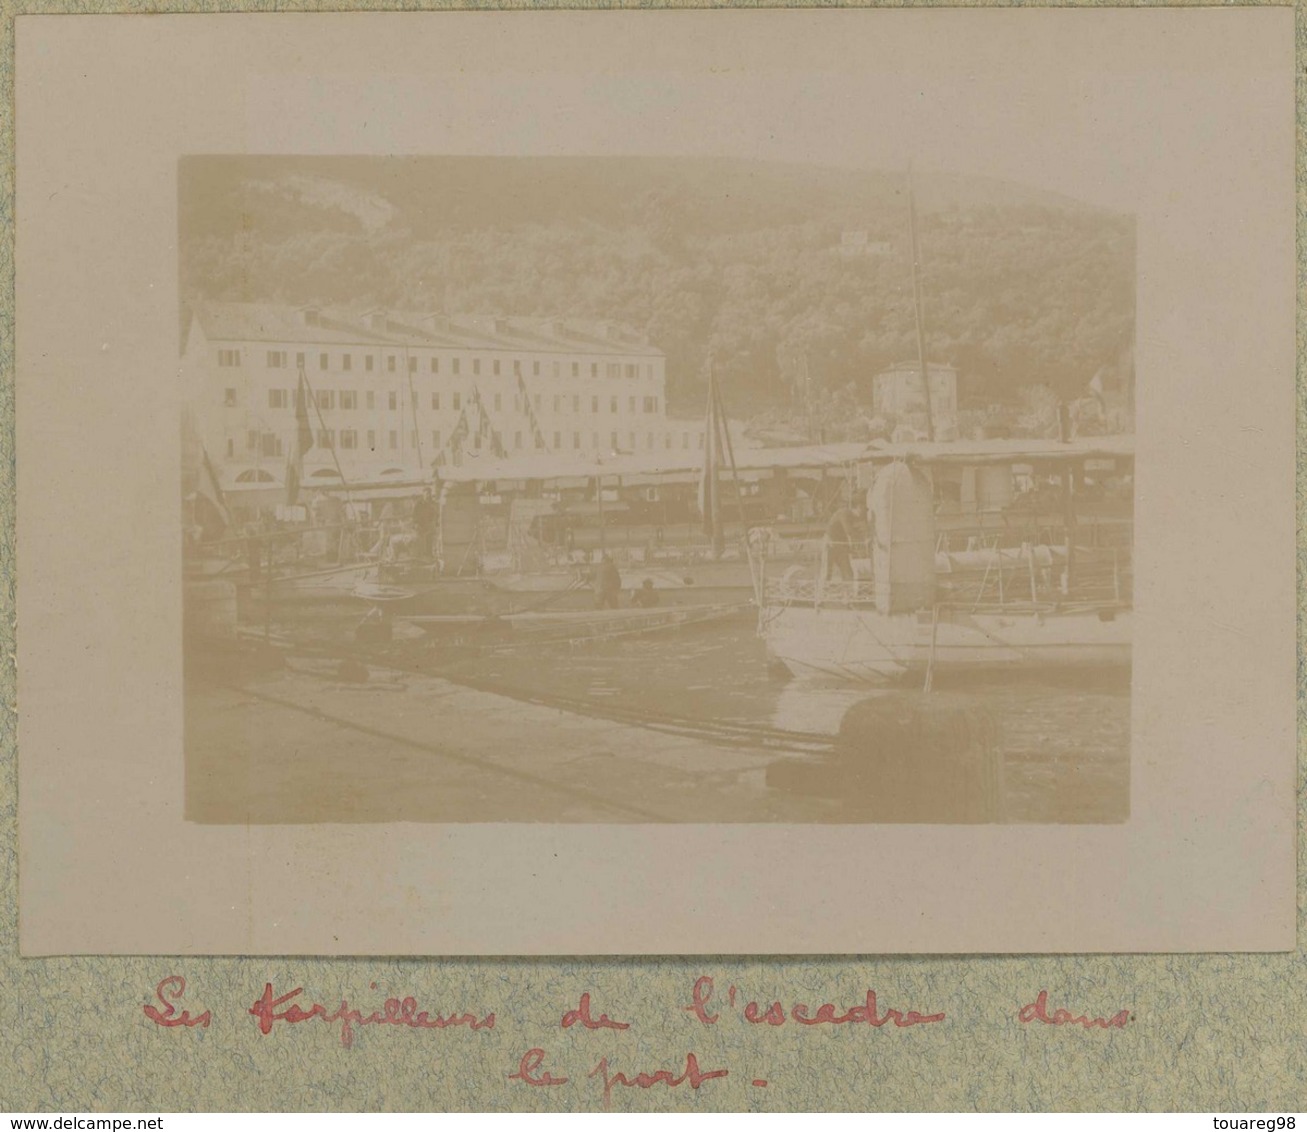 Tirage Circa 1900. Villefranche-sur-Mer (Alpes-Maritimes). Les Torpilleurs De L'escadre Dans Le Port. Bateaux De Guerre. - Lieux